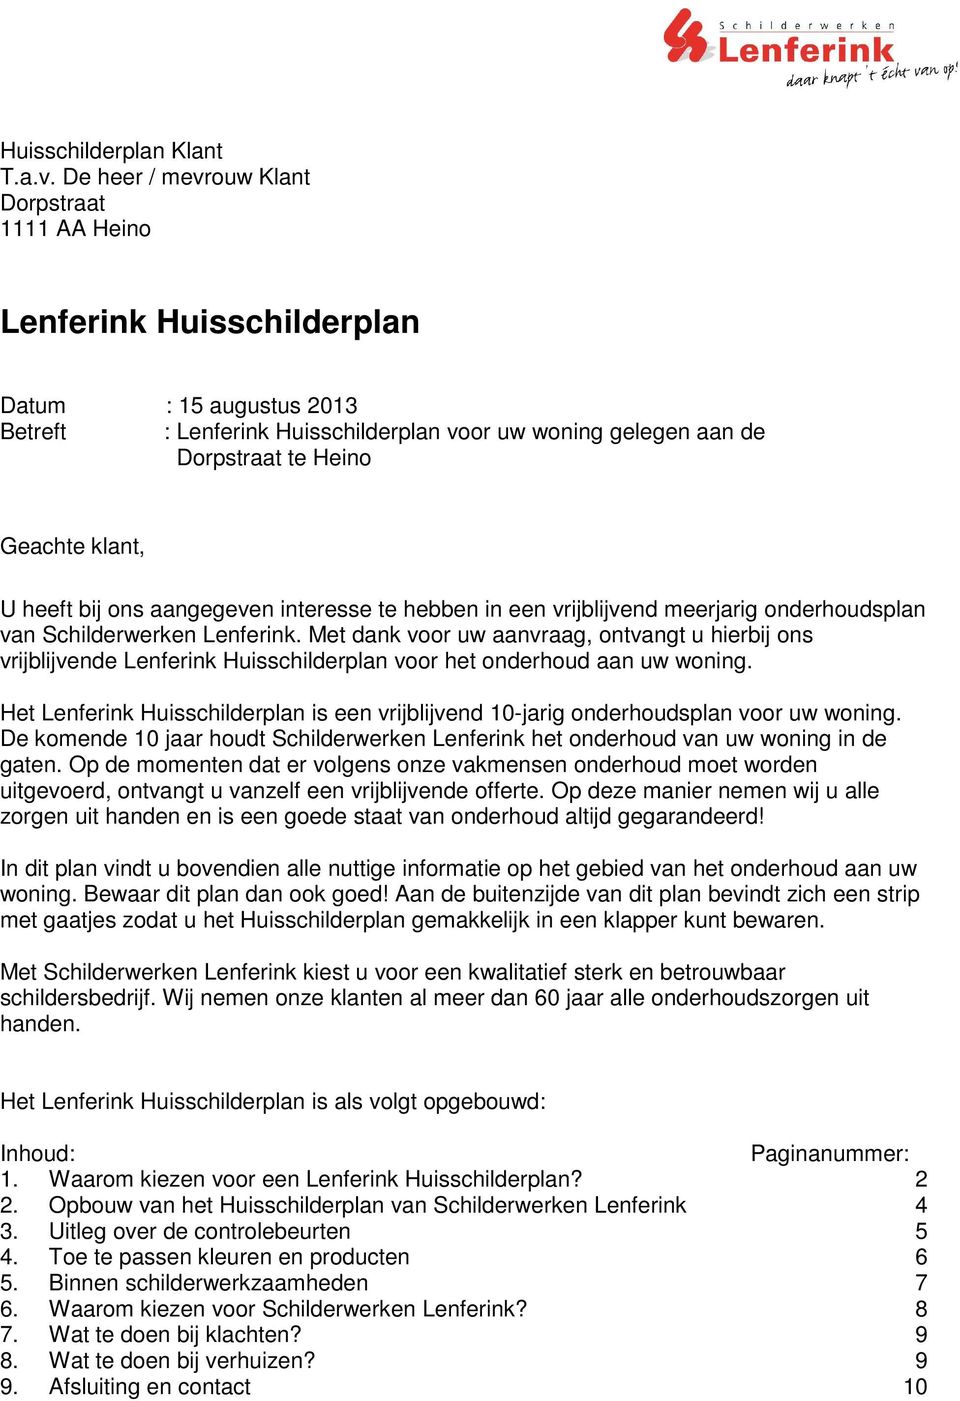 klant, U heeft bij ons aangegeven interesse te hebben in een vrijblijvend meerjarig onderhoudsplan van Schilderwerken Lenferink.